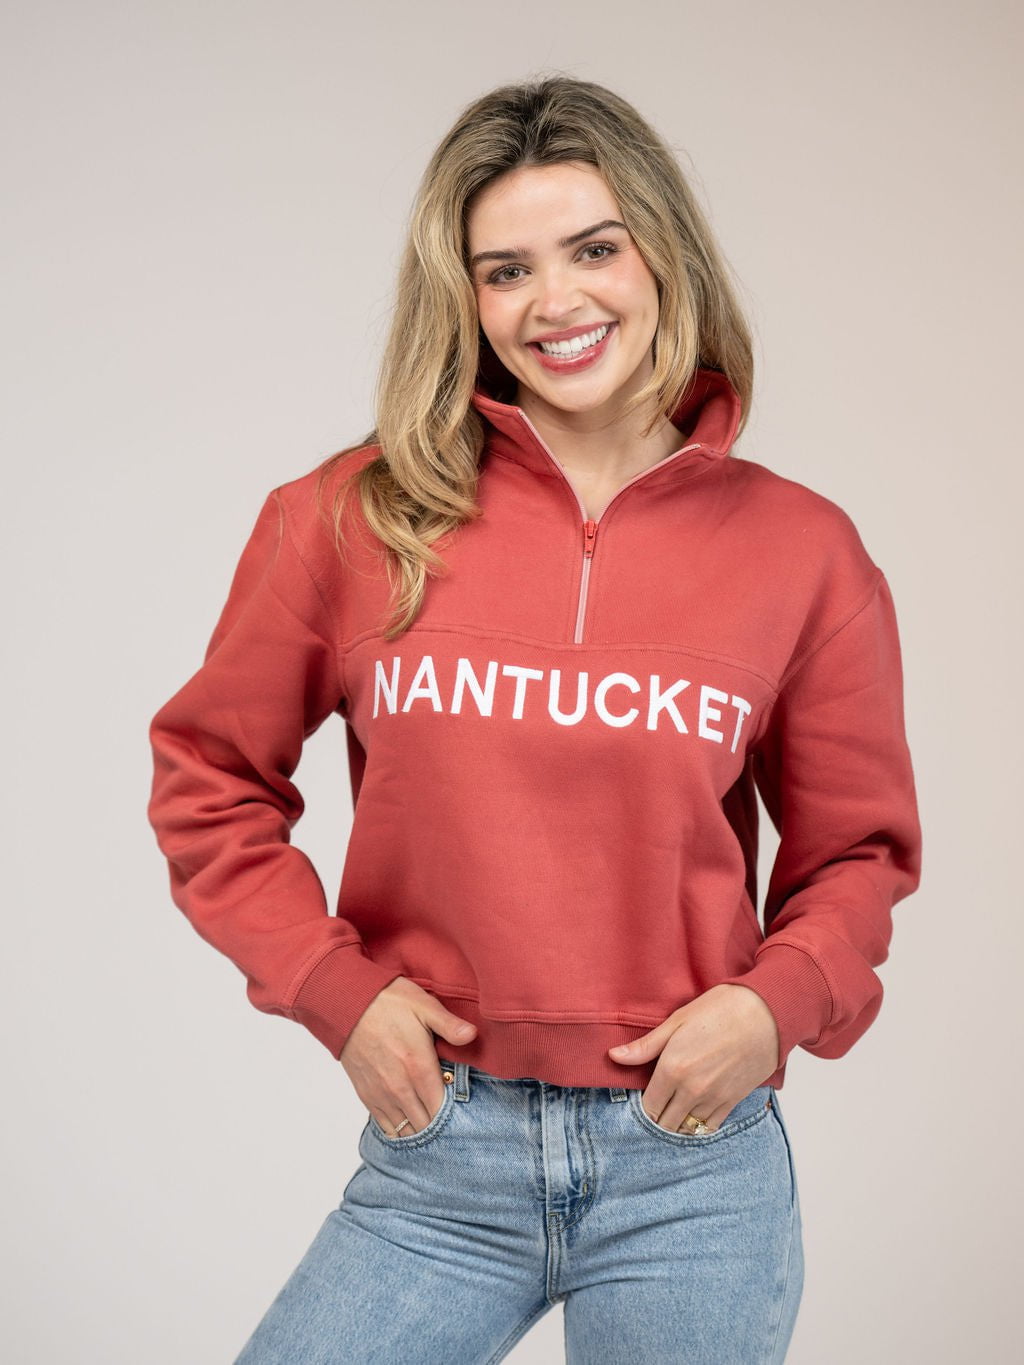 Beau & Ro Sweater Nantucket Half Zip Sweatshirt in Nantucket Red